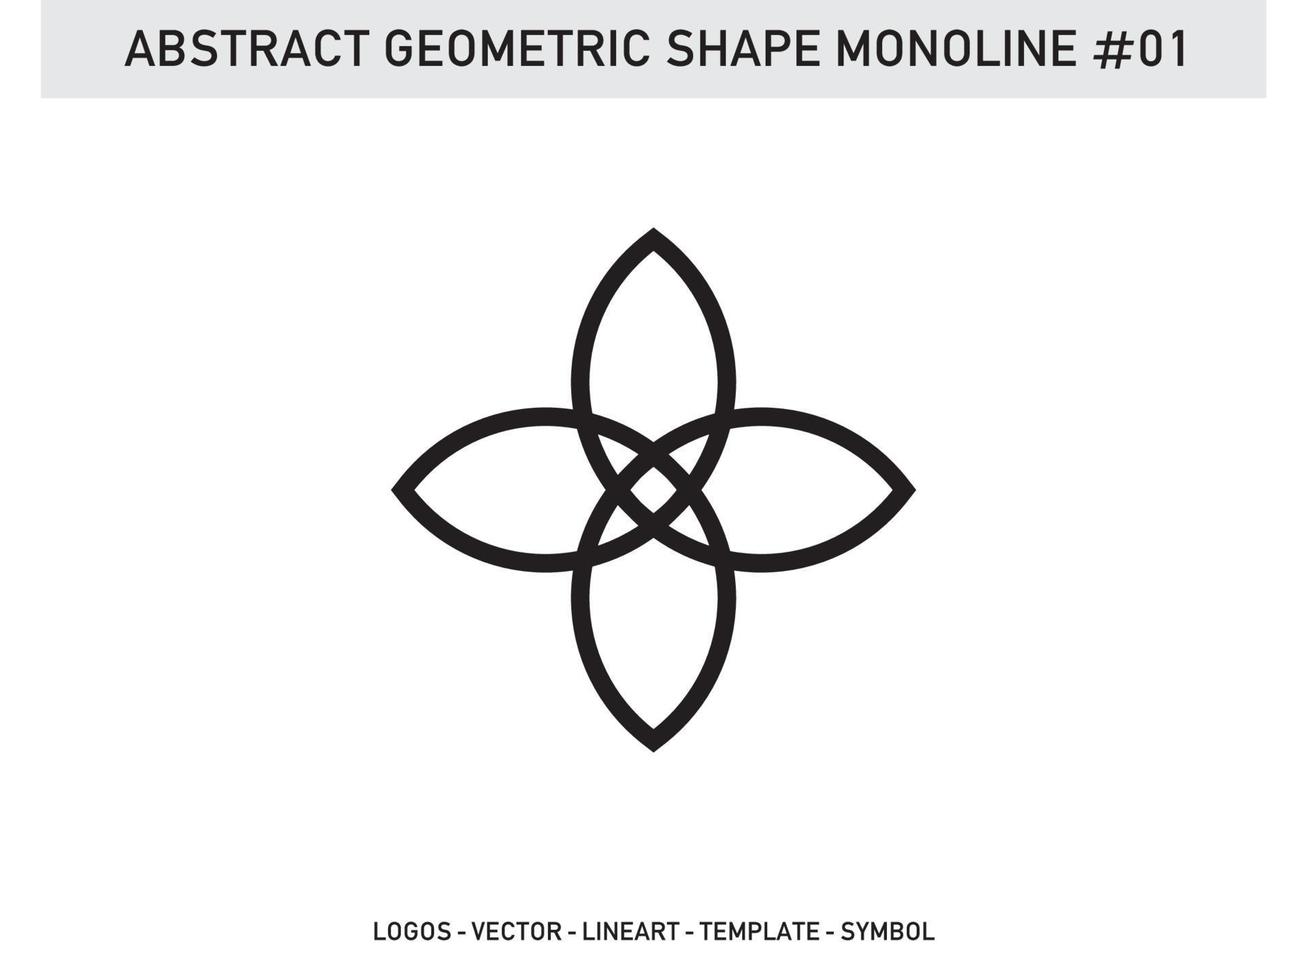 patrón de diseño de mosaico monoline de forma geométrica abstracta sin costura pro gratis vector